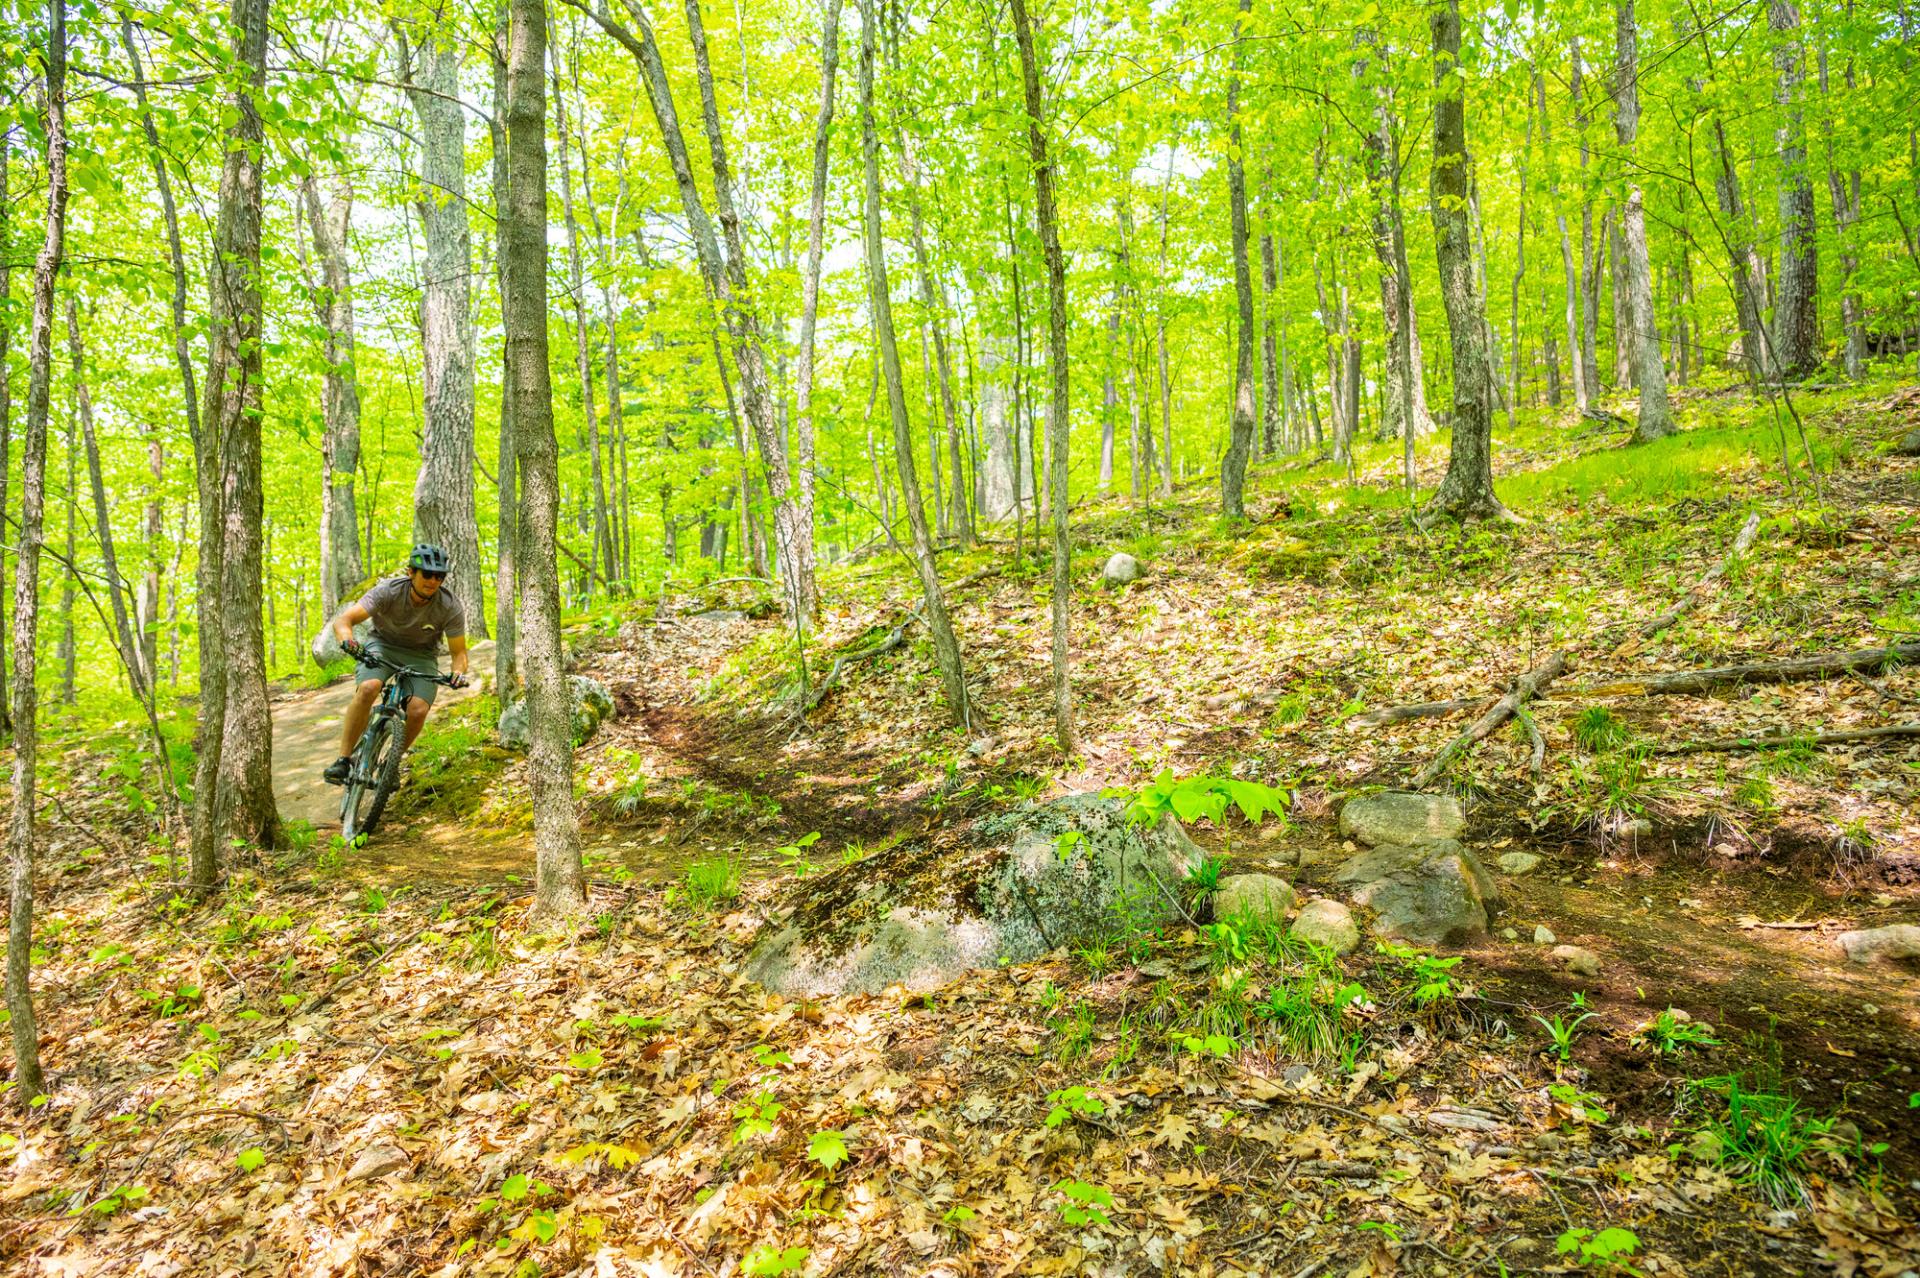 A biker rides through bright green trees